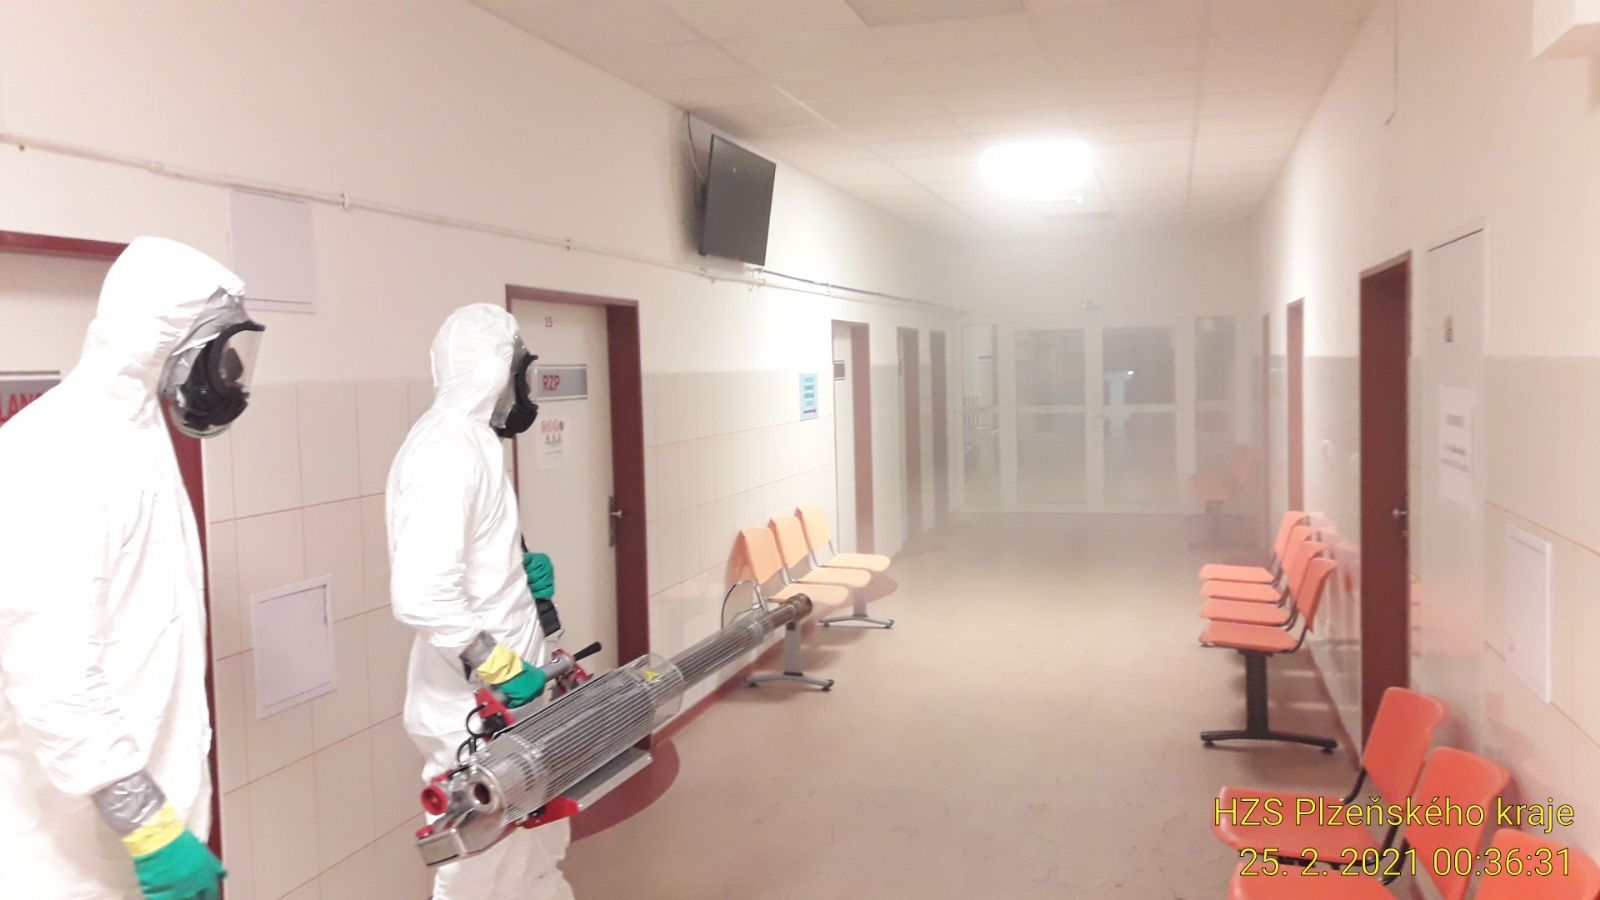 Rokycanská nemocnice ošetřila společné prostory mlžnou dezinfekcí